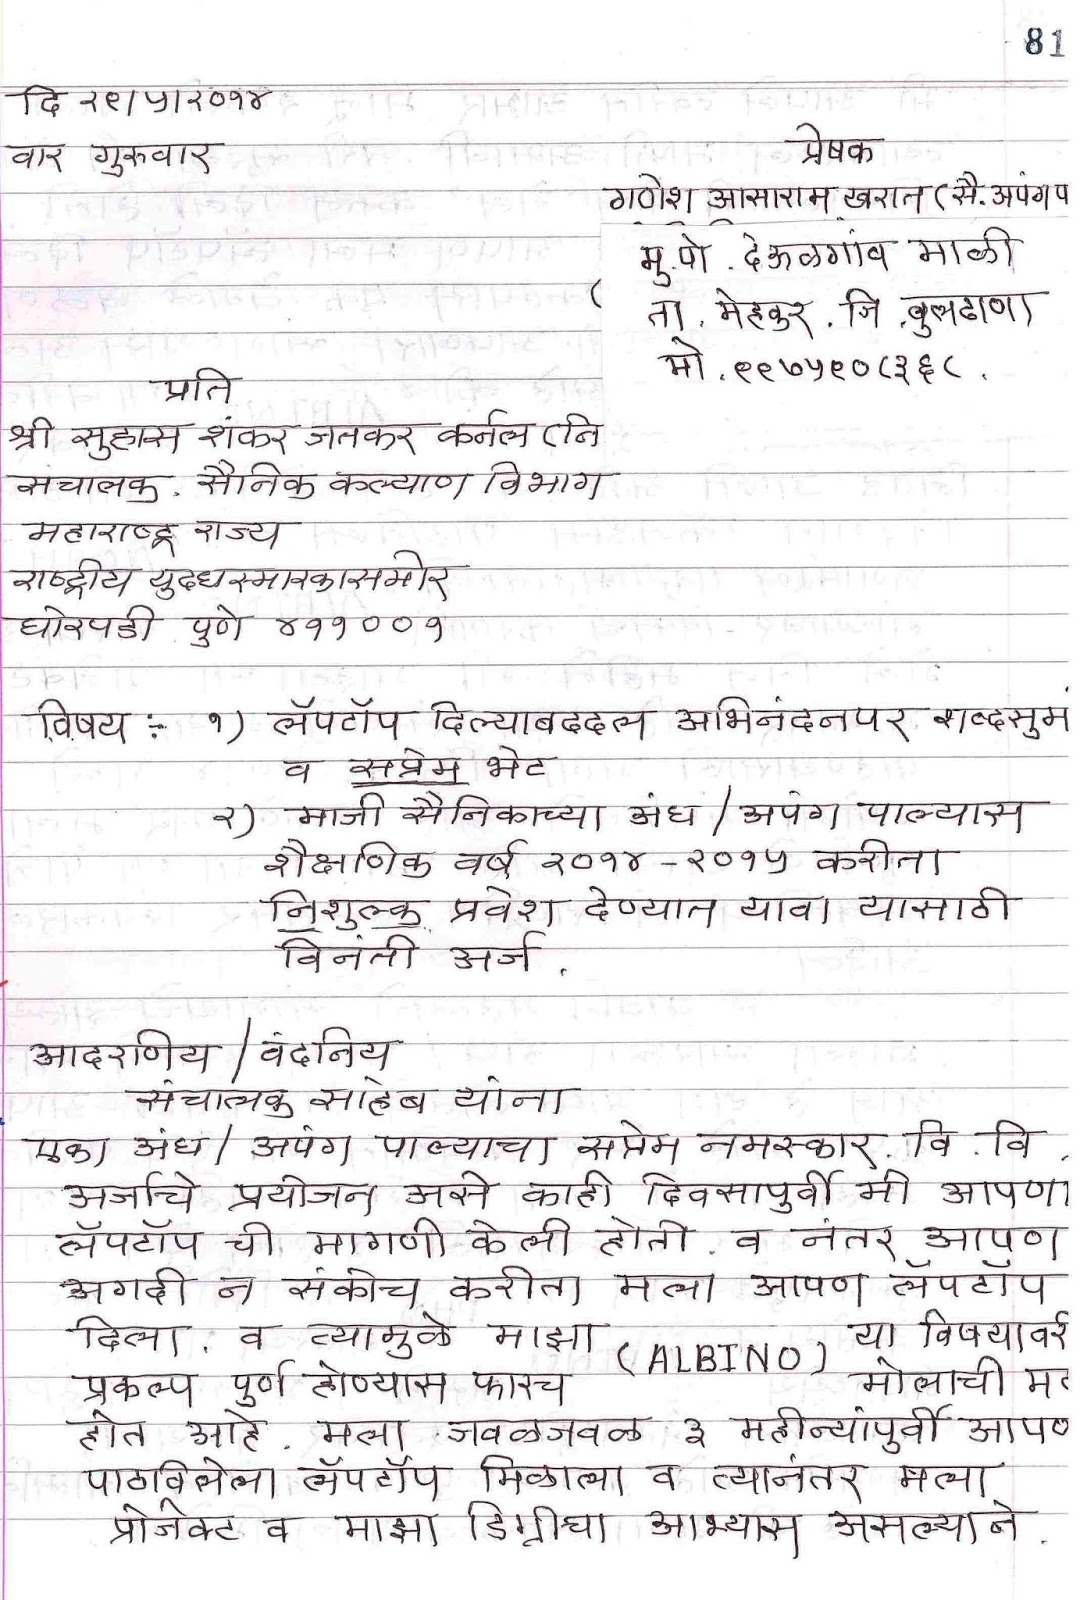 letter-format-in-marathi-language-resume-letter